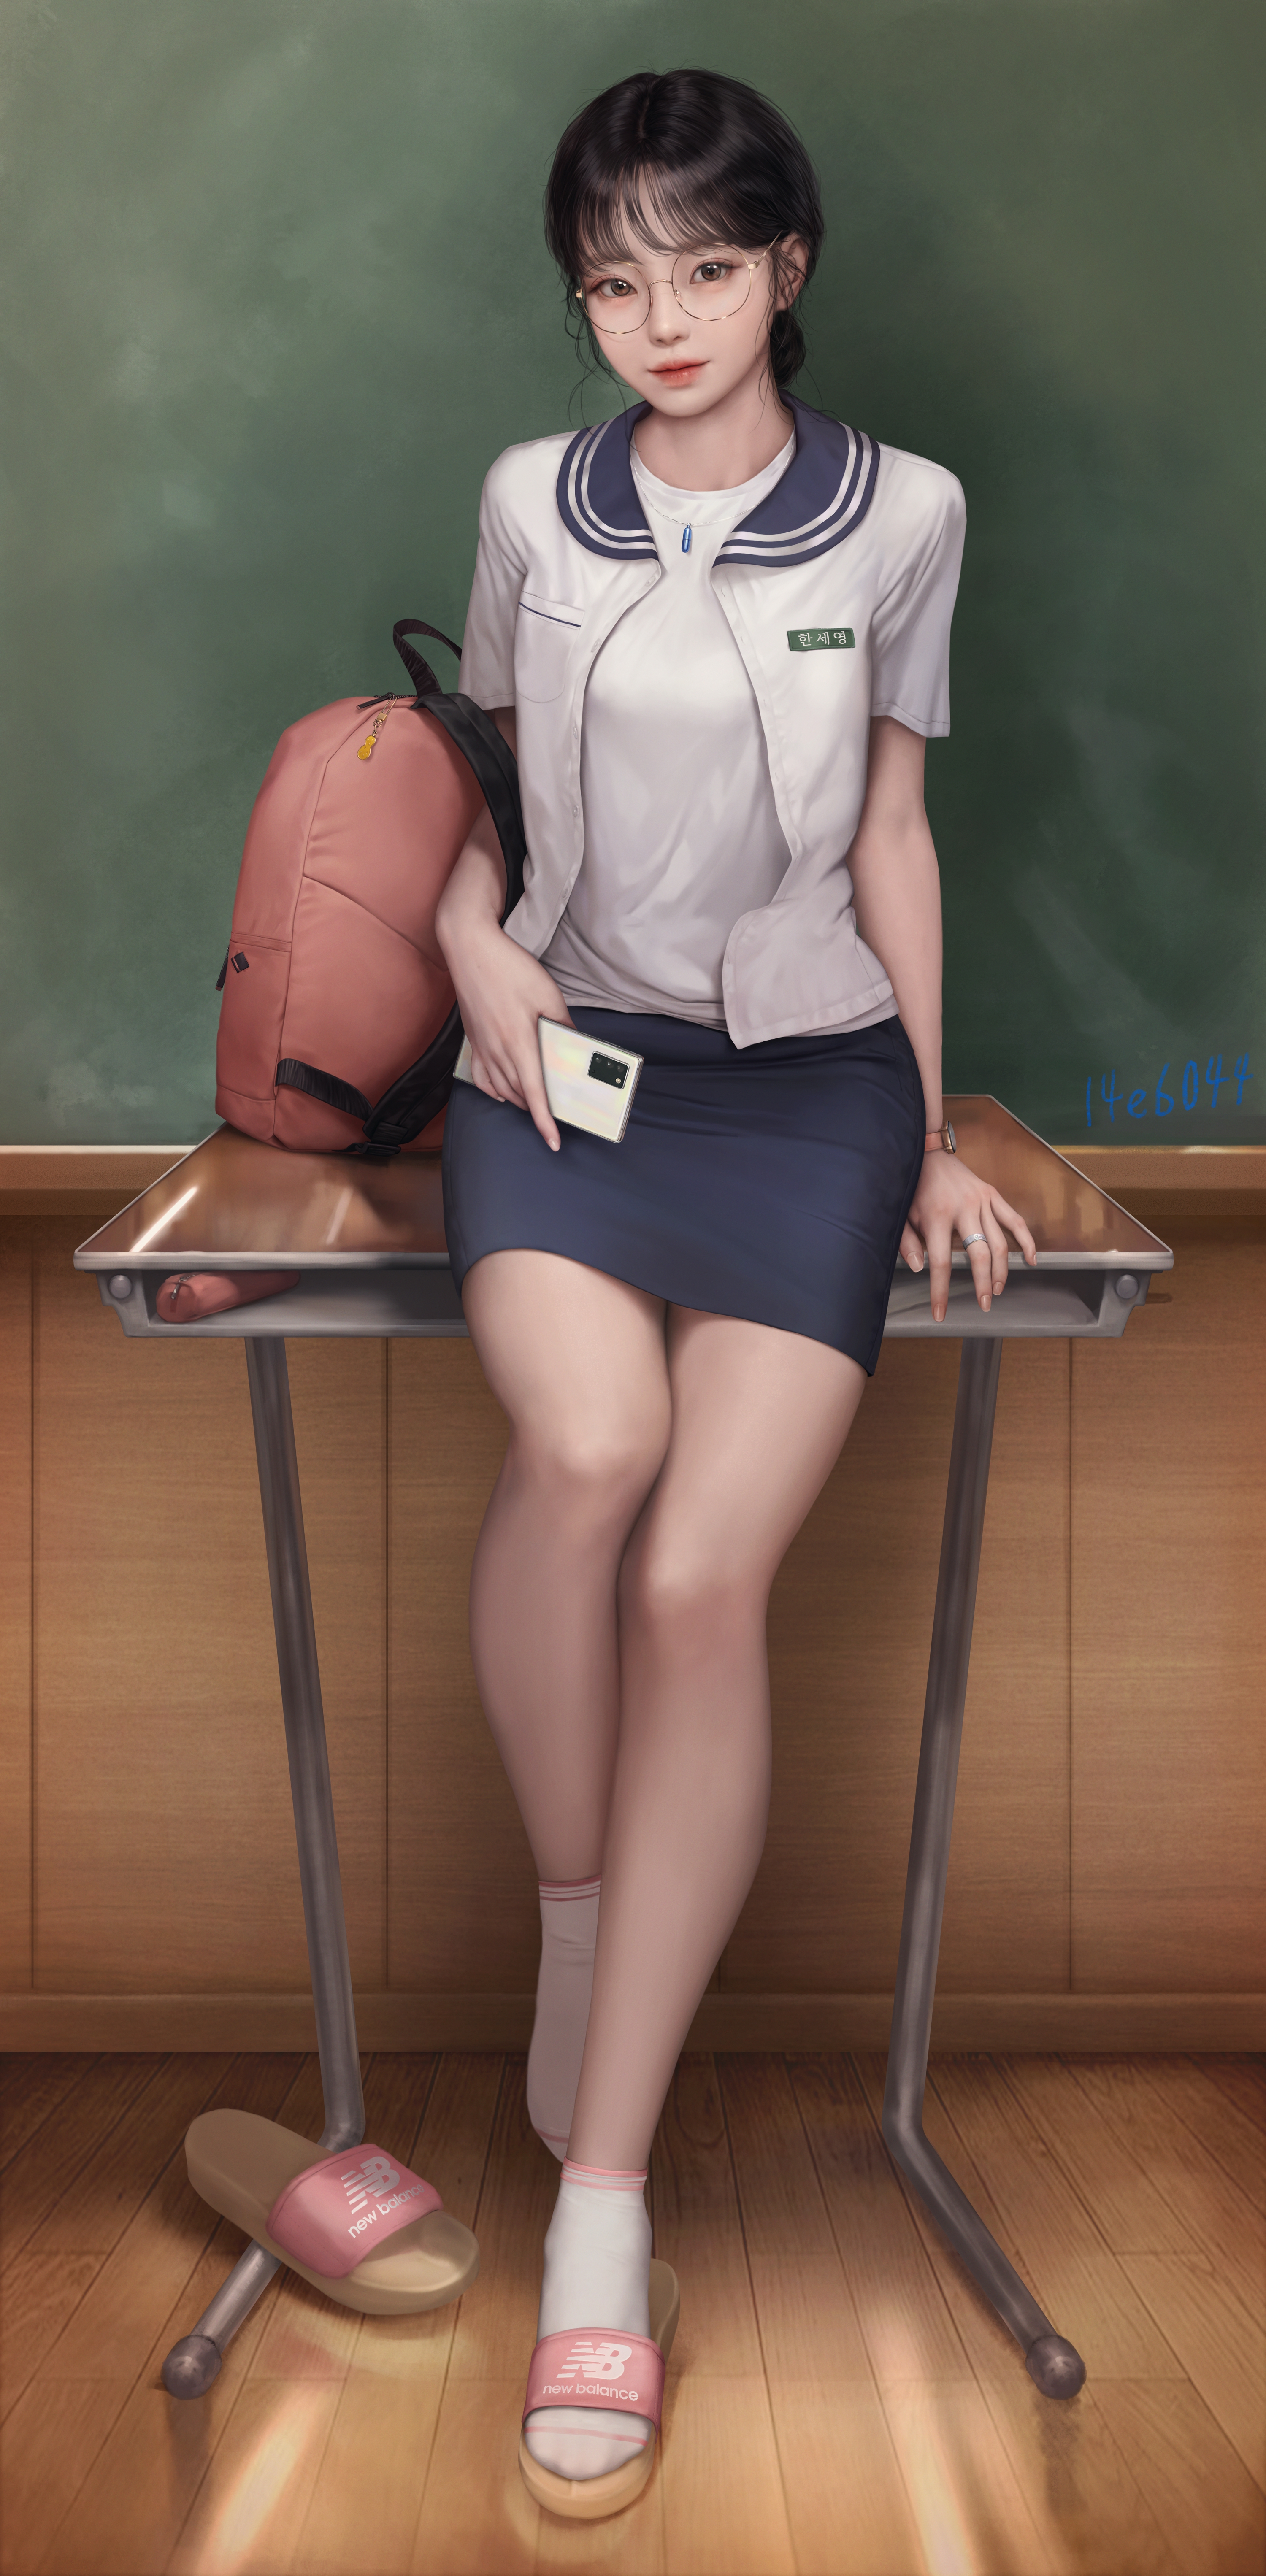 Asian Schoolgirl School Uniform Blackboard Artwork Drawing Desk Cellphone Yong Jun Park Women Lookin 3000x6105